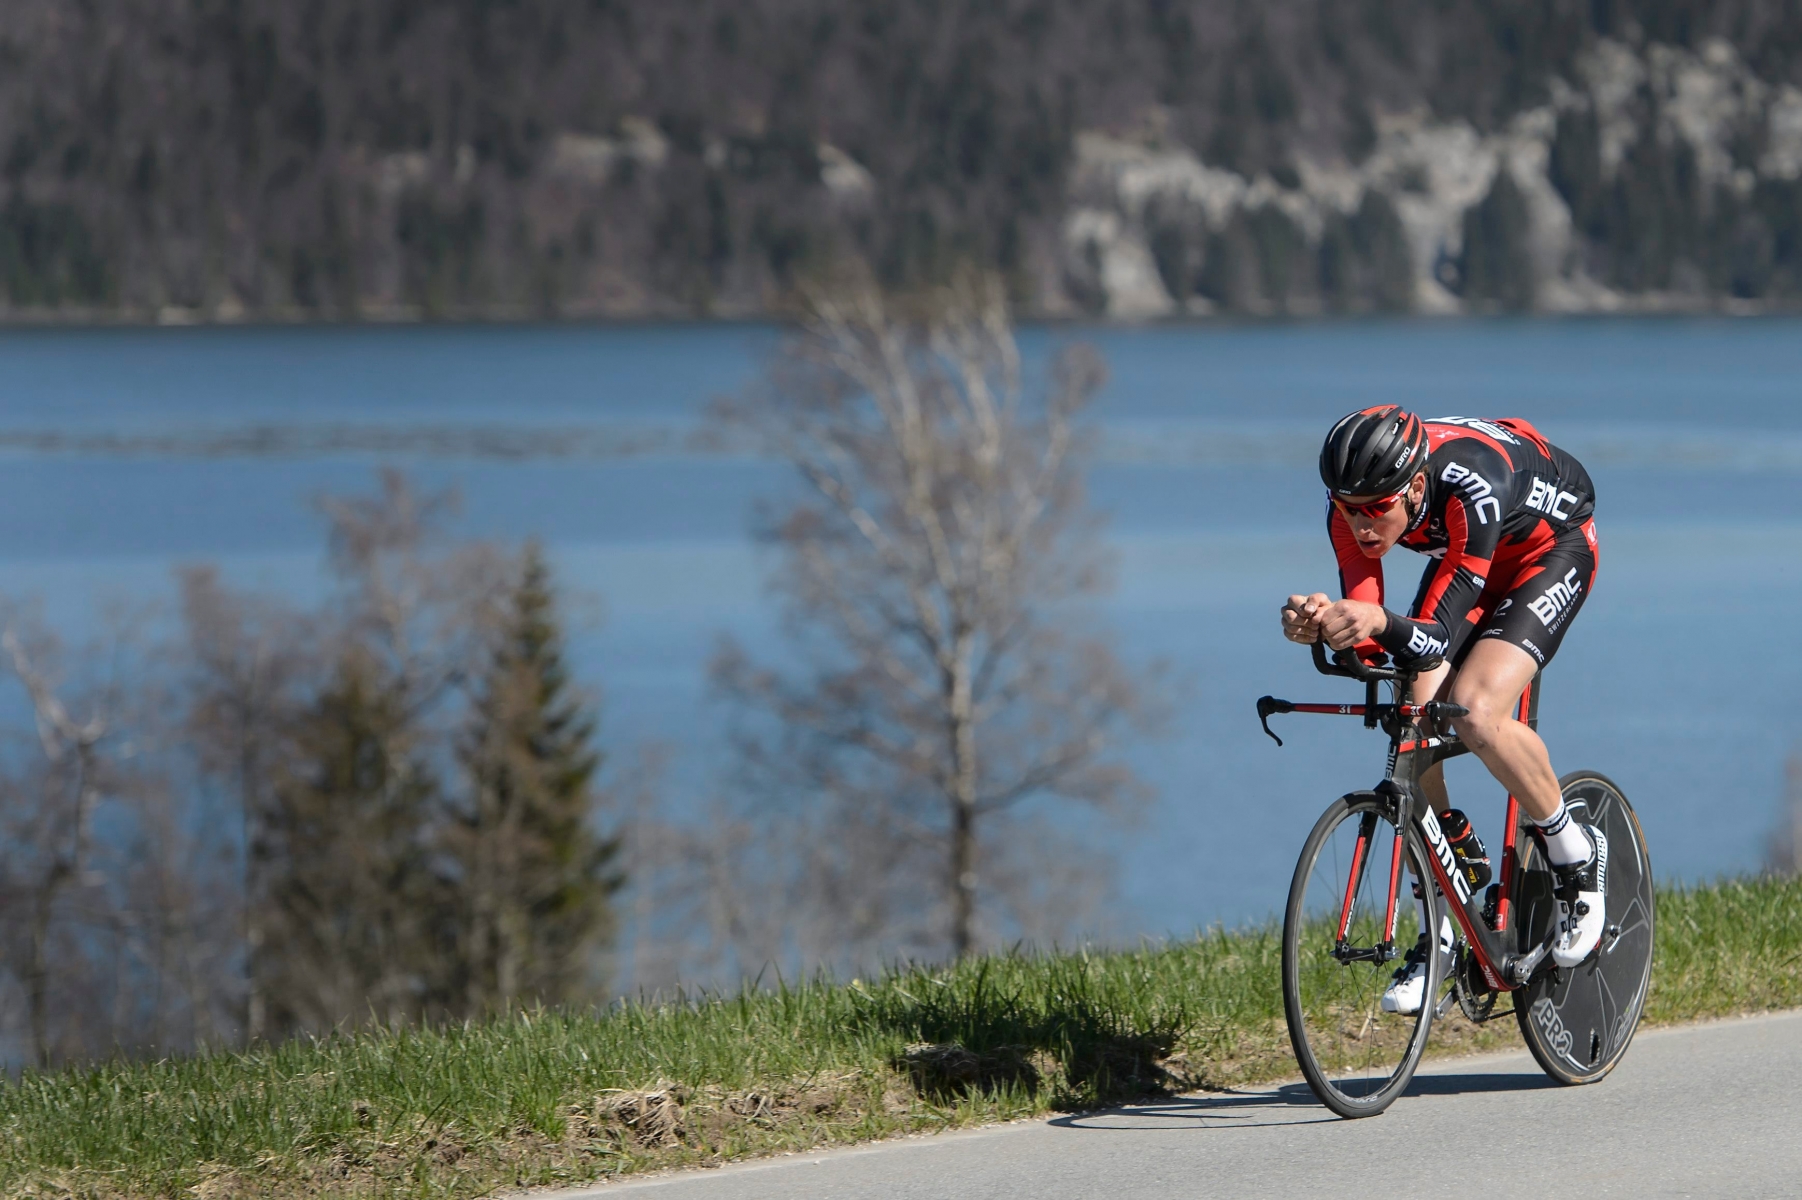 Stefan Kueng, le cycliste suisse de l'equipe BMC en action lors d'un entrainement ce mercredi 22 avril 2015 a L'Abbaye dans le canton de Vaud. (KEYSTONE/Jean-Christophe Bott) SCHWEIZ RADSPORT STEFAN KUENG